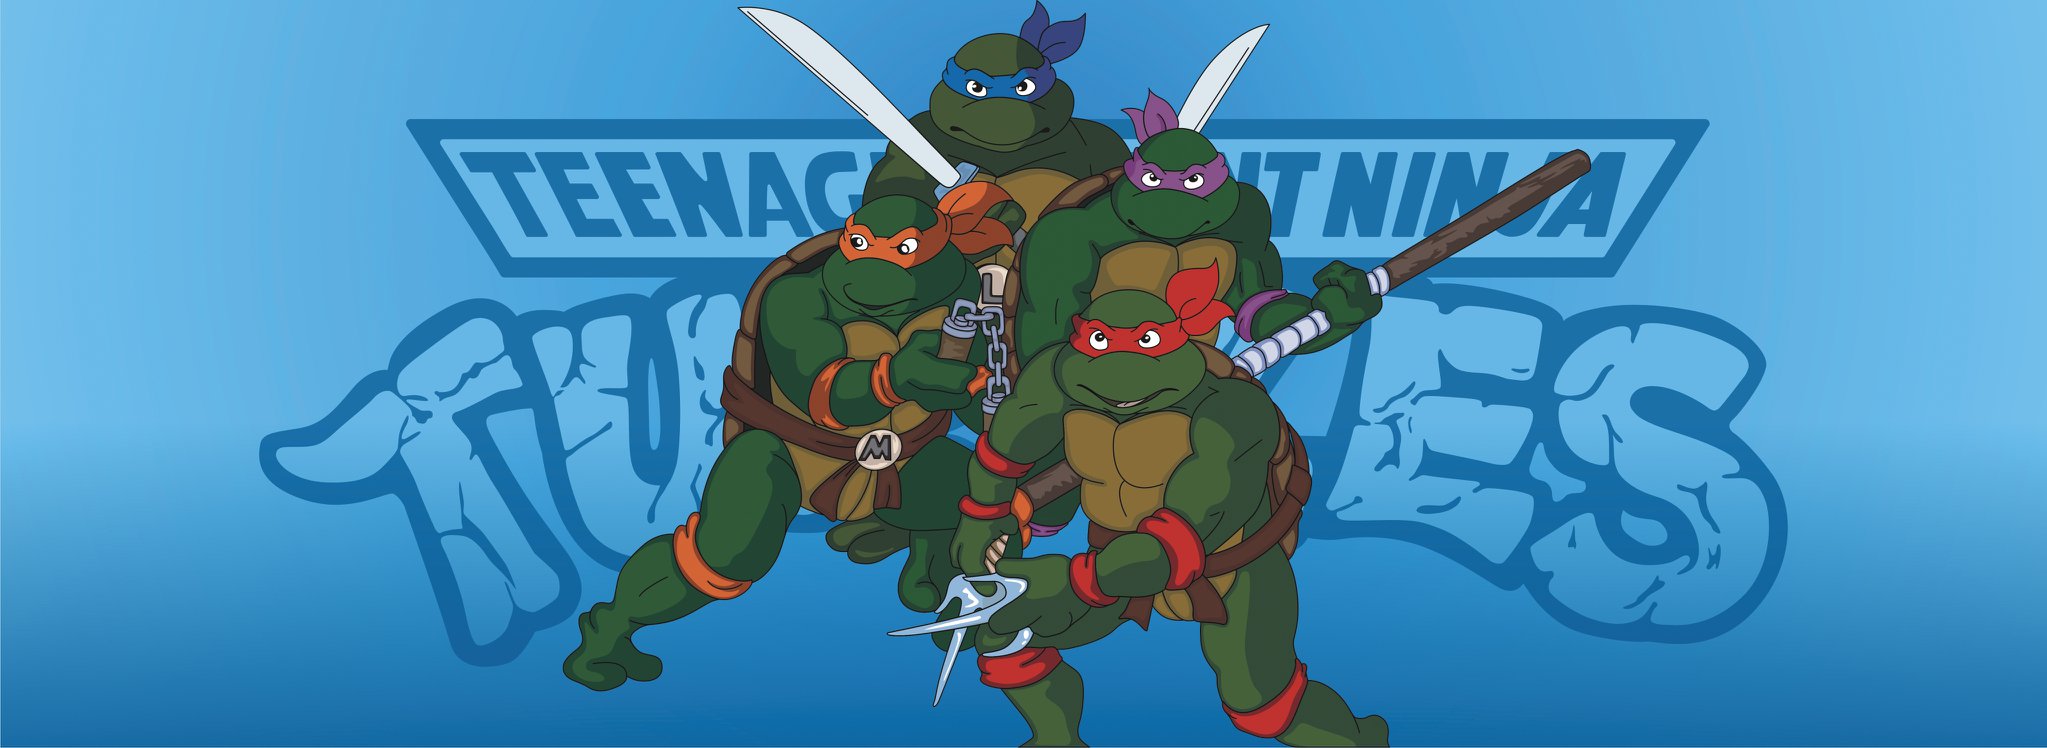 Teenage Mutant Ninja Turtles Fanart